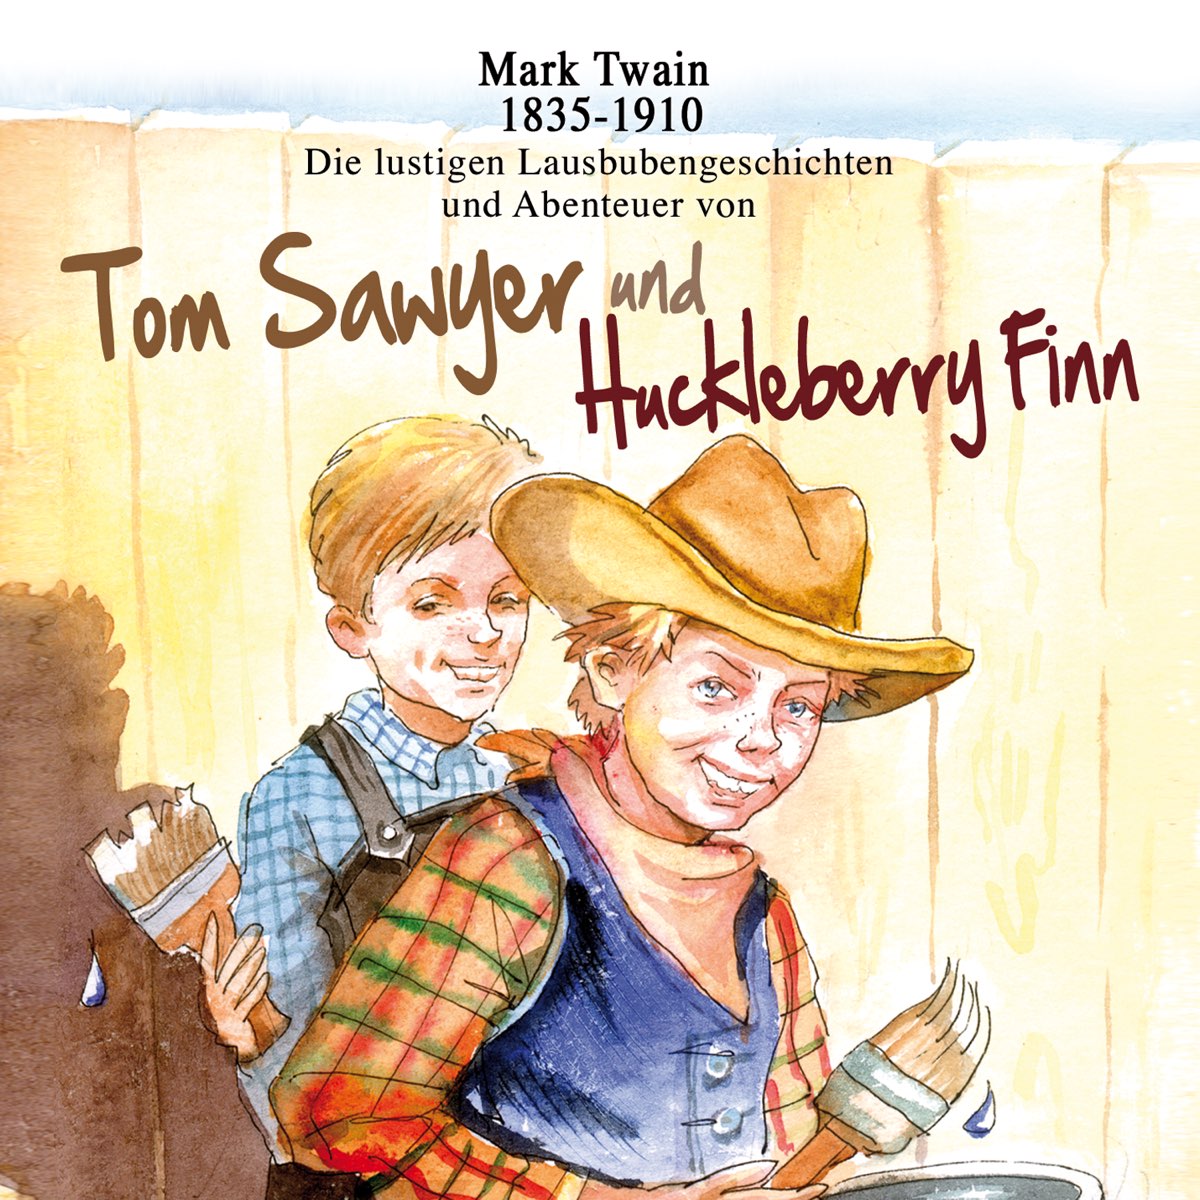 Том сойер книга слушать. Mark Twain Tom Sawyer. Том Сойер и Гекльберри. Tom Sawyer & Huckleberry Finn. Mark Twain Tom Sawyer and Huckleberry Finn.